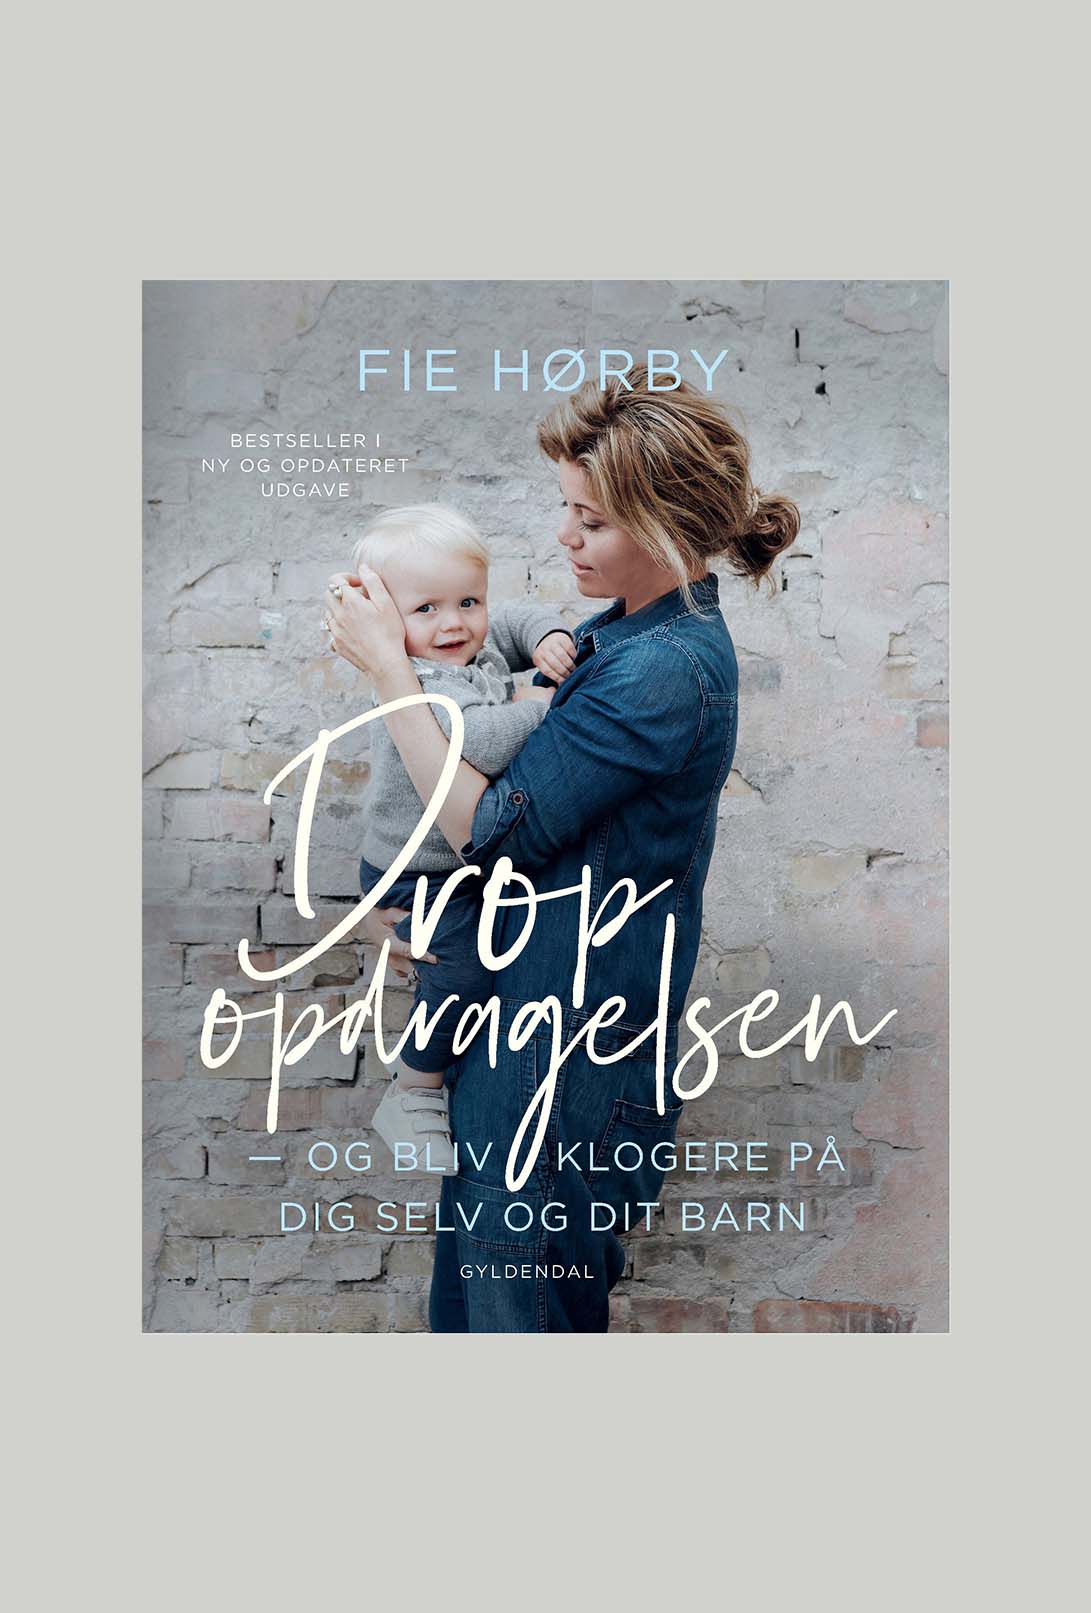 Drop opdragelsen af Fie Hørby